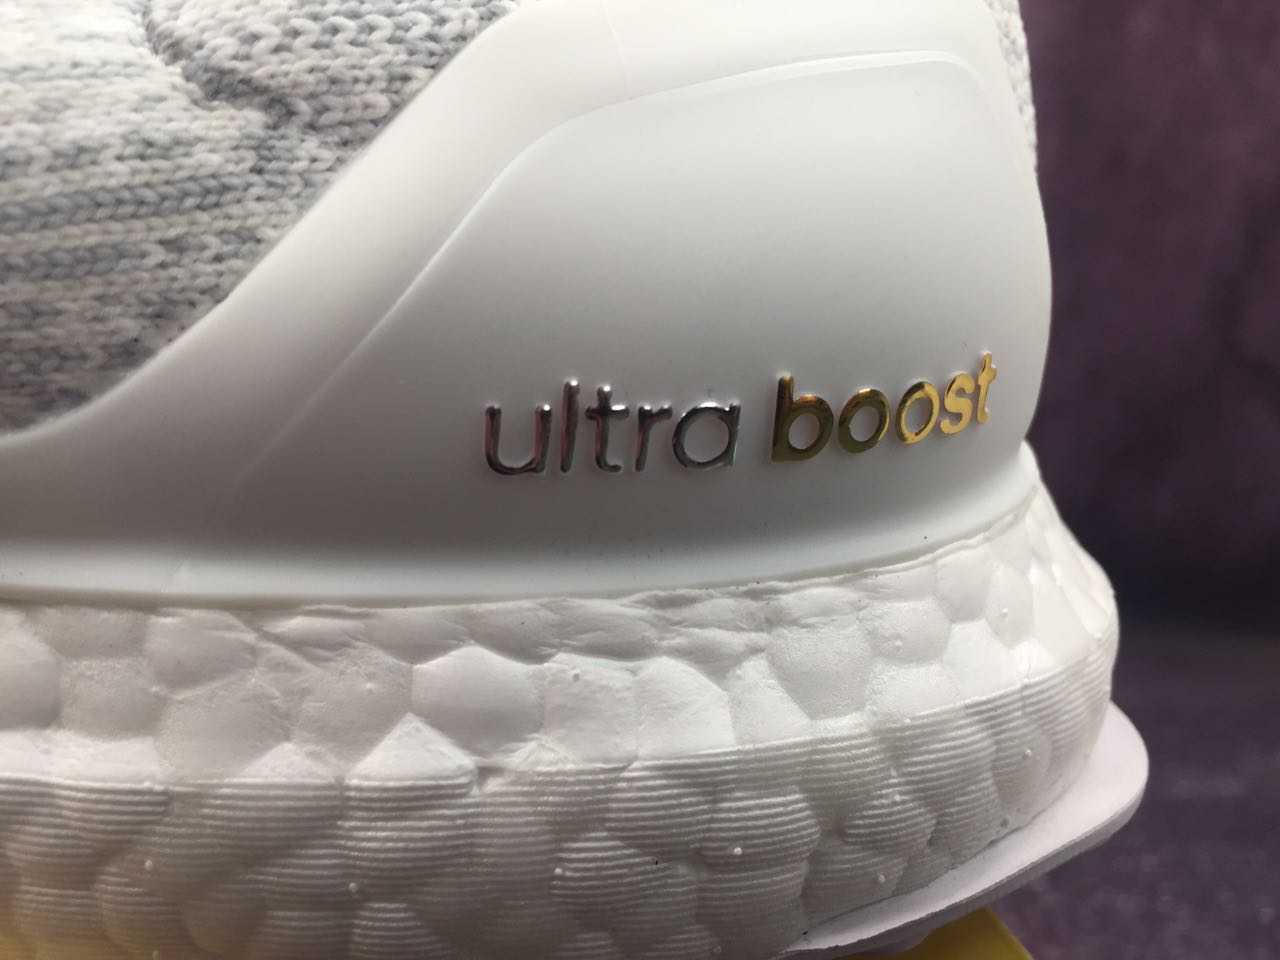 46正品新款真爆阿迪达斯男子运动鞋 Adidas Ultra boost Uncaged 袜子运动跑步鞋BB0773 纯白灰